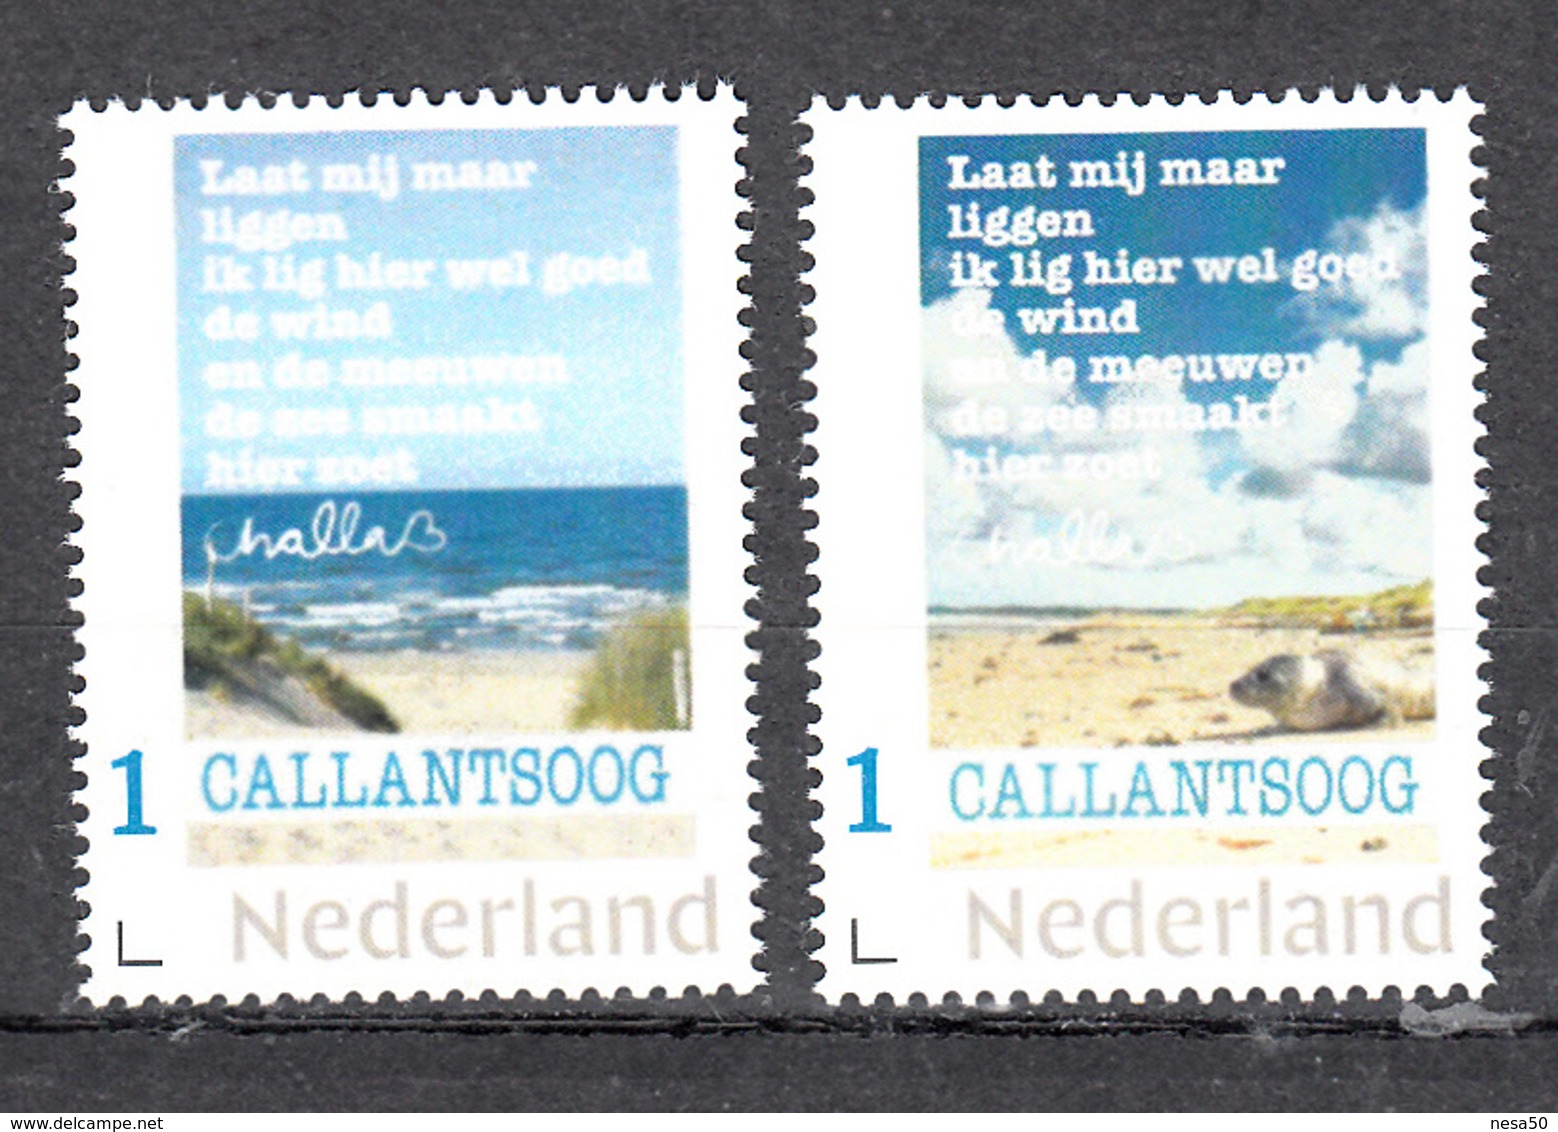 Nederland  Persoonlijke Zegel: Callantsoog 2 Postzegels Van Kunstenaar Challa, Met Zeehond En  Teksten , Gedichten - Nuovi